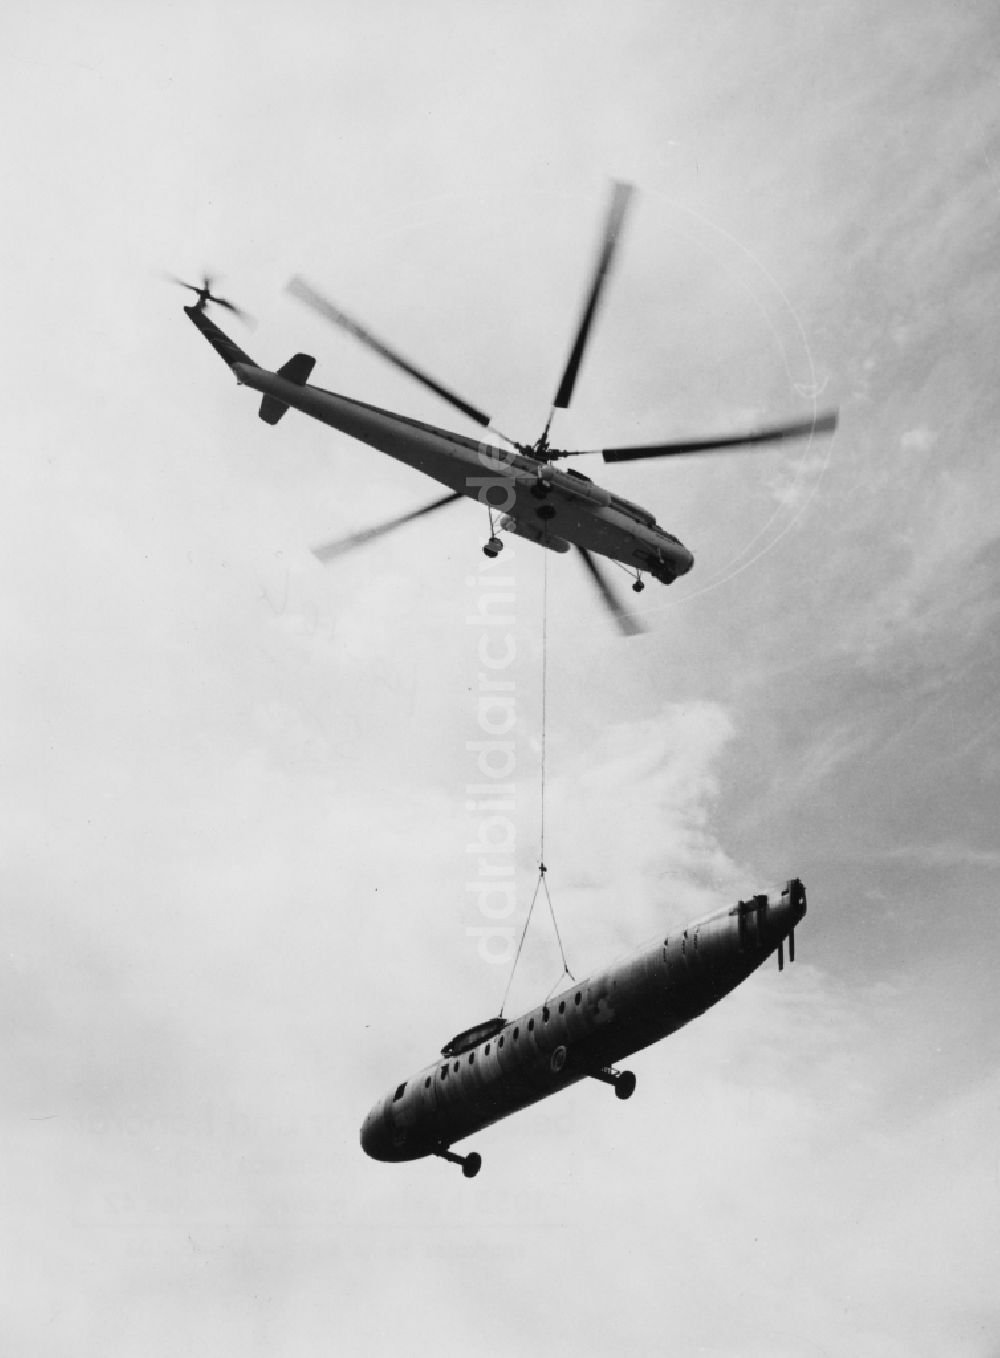 DDR-Bildarchiv: Dresden - Überführungsflug eines Flugzeugrumpfes 152 mit einem Transporthubschrauber Mil Mi-10 in Dresden in Sachsen